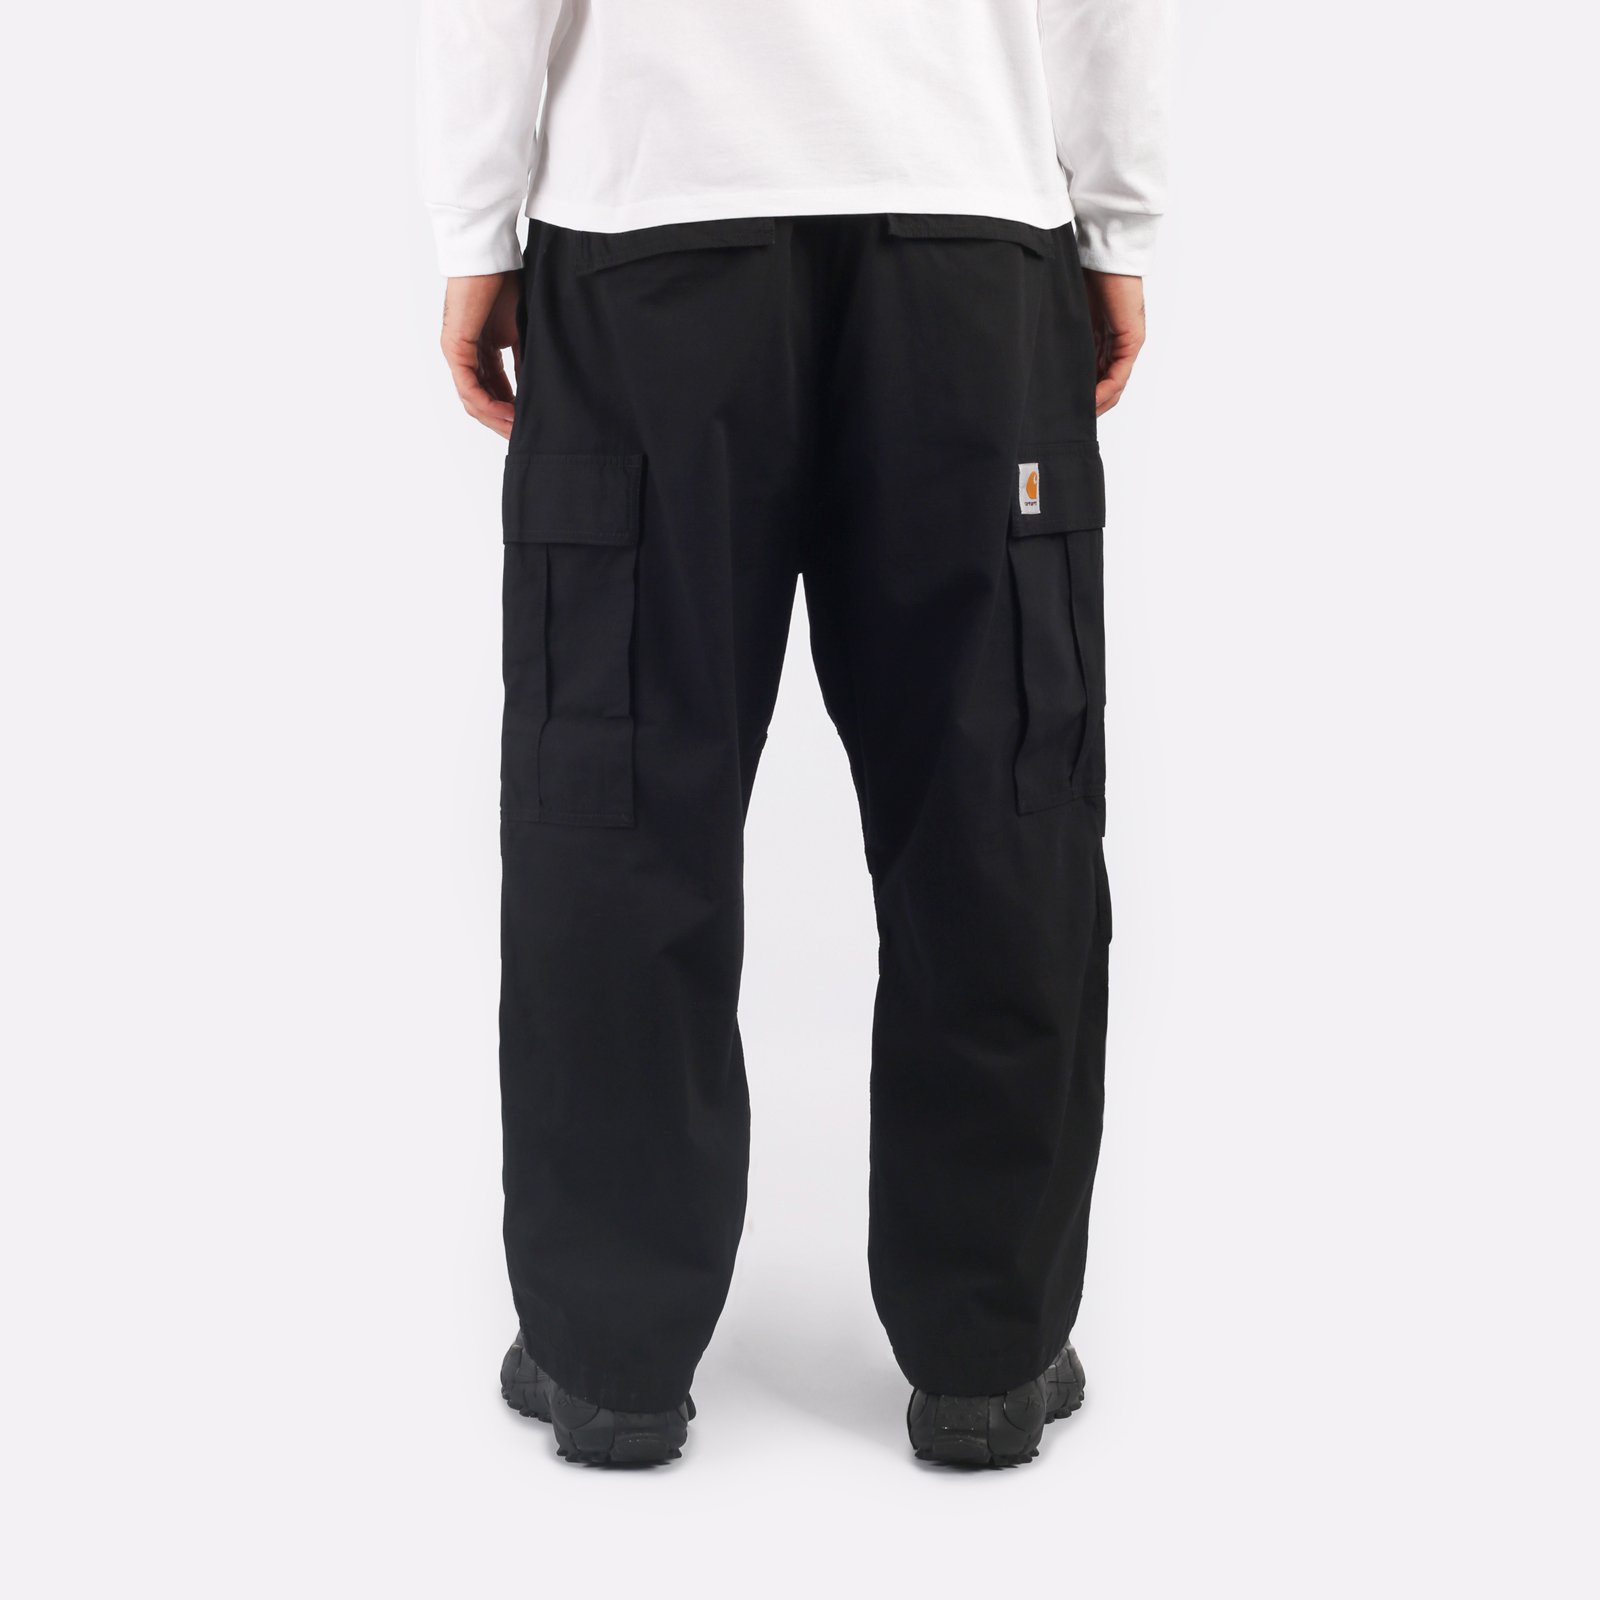 мужские брюки Carhartt WIP Jet Cargo Pant  (I032967-black)  - цена, описание, фото 2